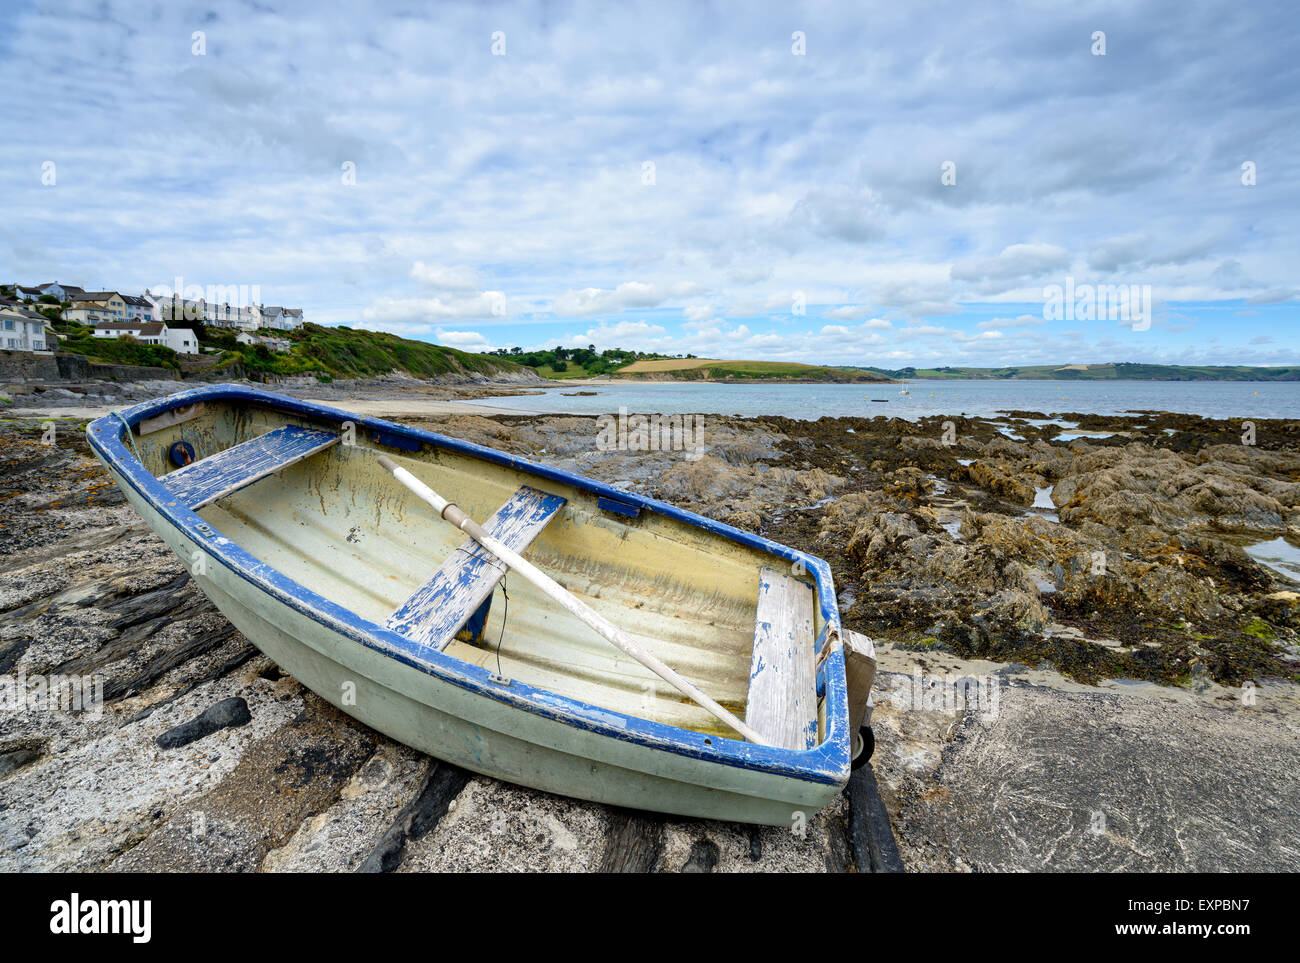 Un canot sur la plage à Portscatho un petit village de pêche pittoresque près de St Mawes sur la côte de Cornouailles Banque D'Images